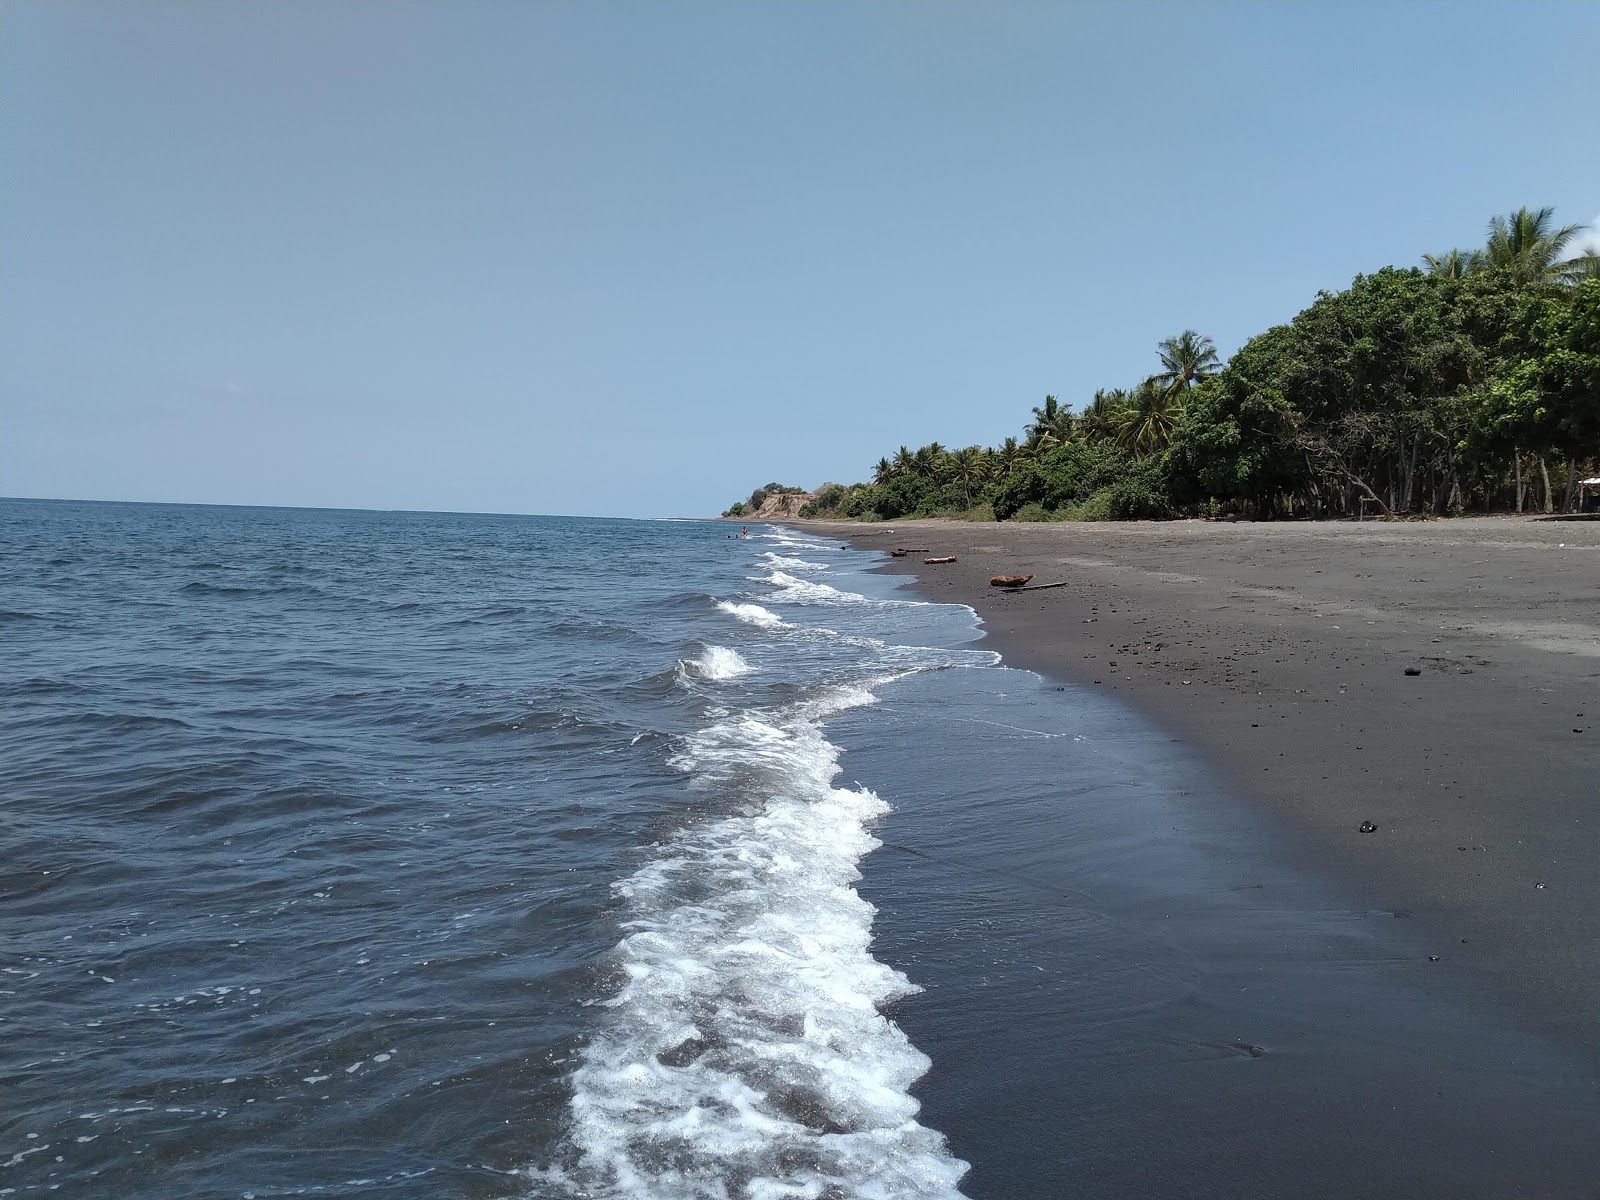 Zdjęcie Beraringan beach z powierzchnią brązowy piasek